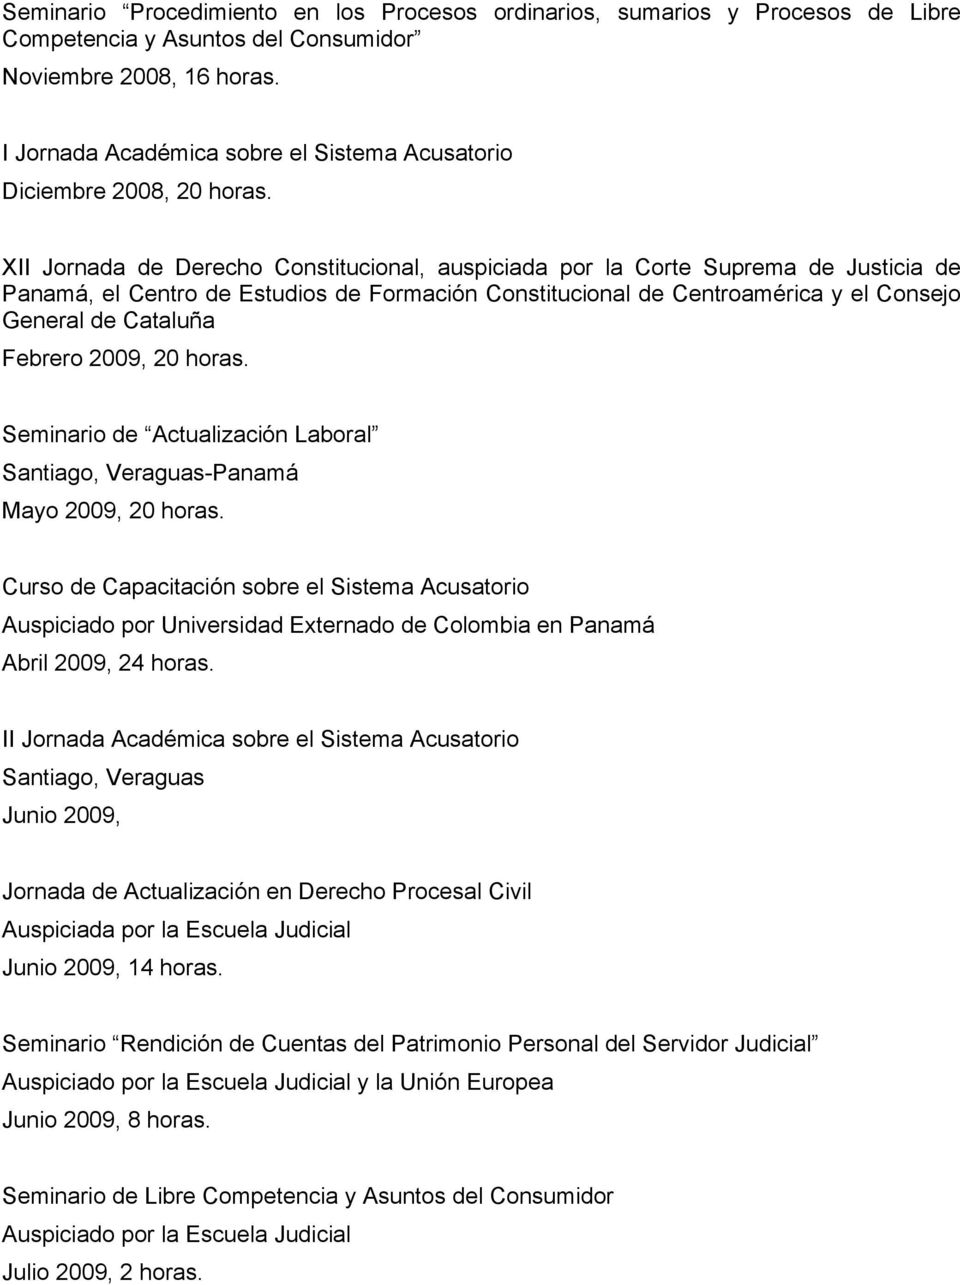 XII Jornada de Derecho Constitucional, auspiciada por la Corte Suprema de Justicia de Panamá, el Centro de Estudios de Formación Constitucional de Centroamérica y el Consejo General de Cataluña